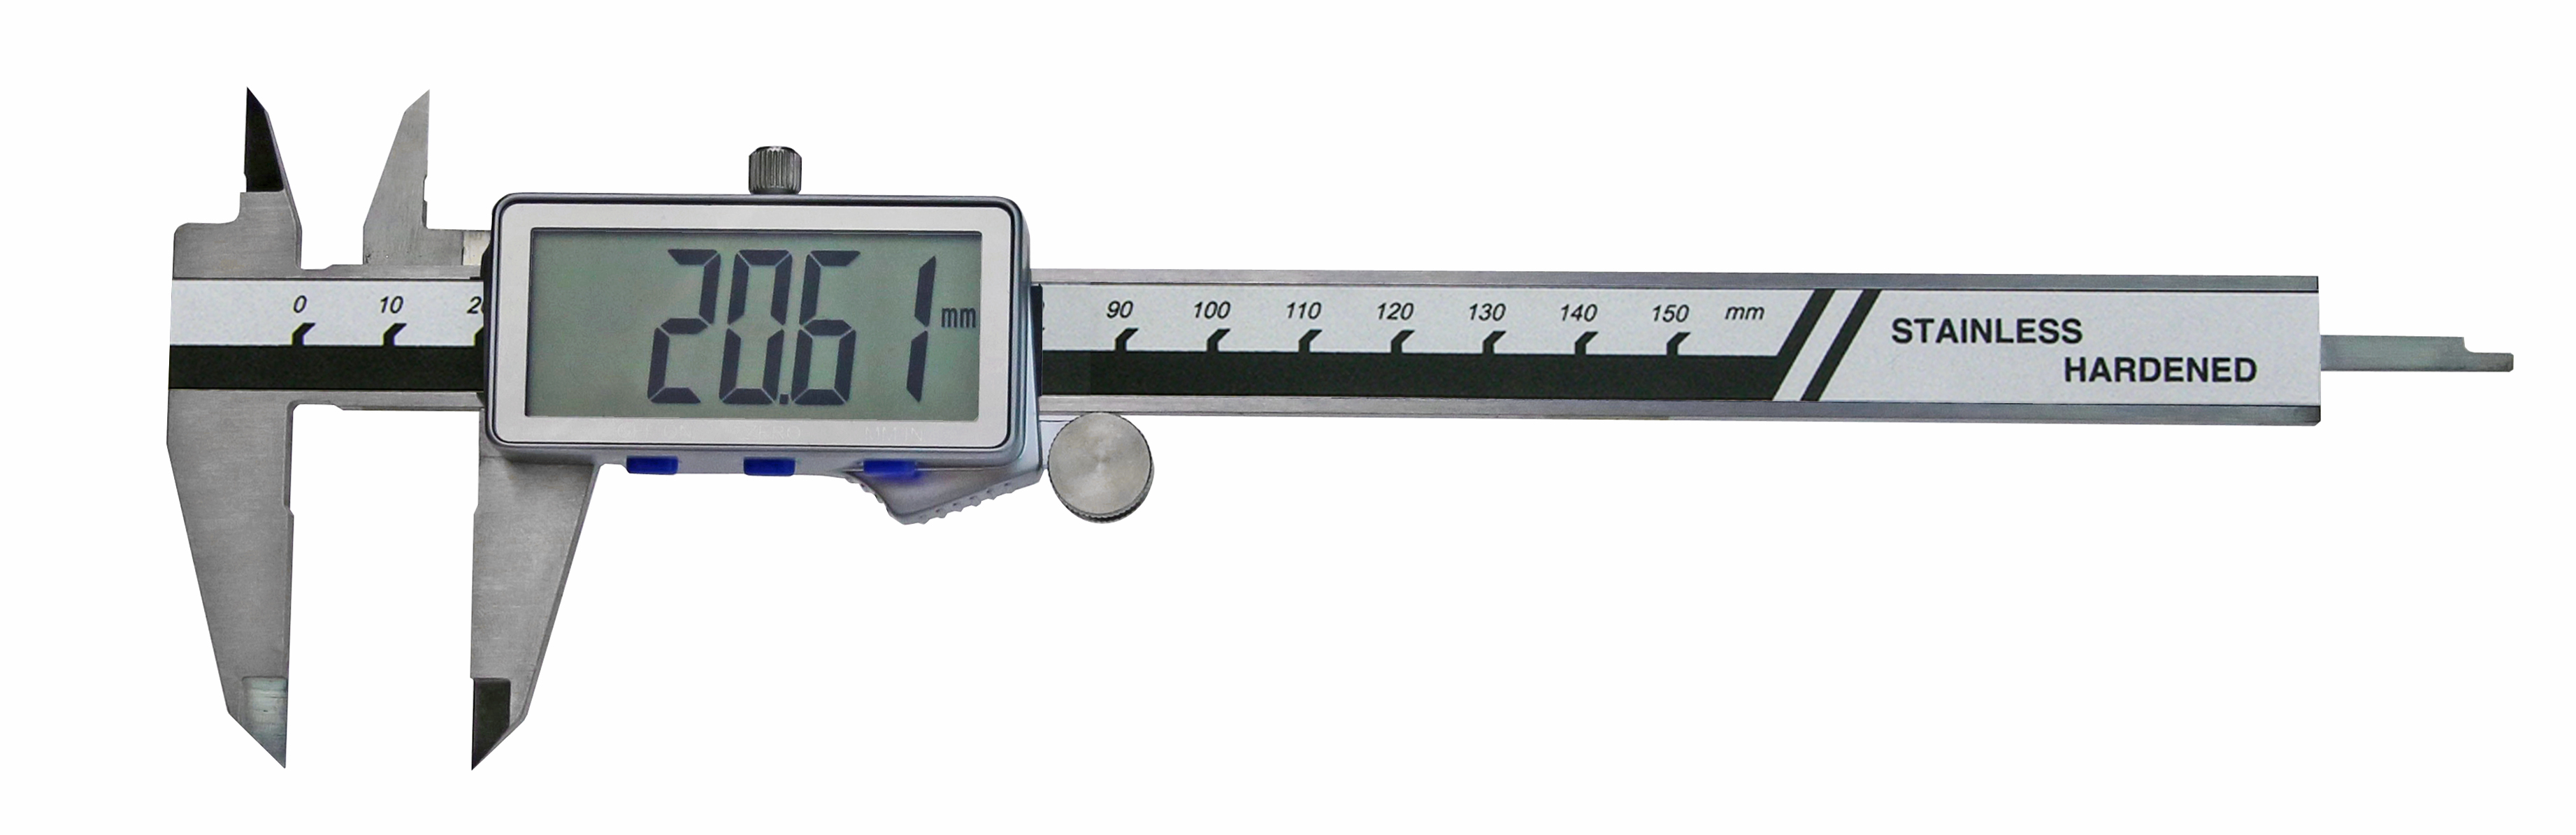 Digital-Messschieber 0 - 150 mm mit extra großer Anzeige DIN 862